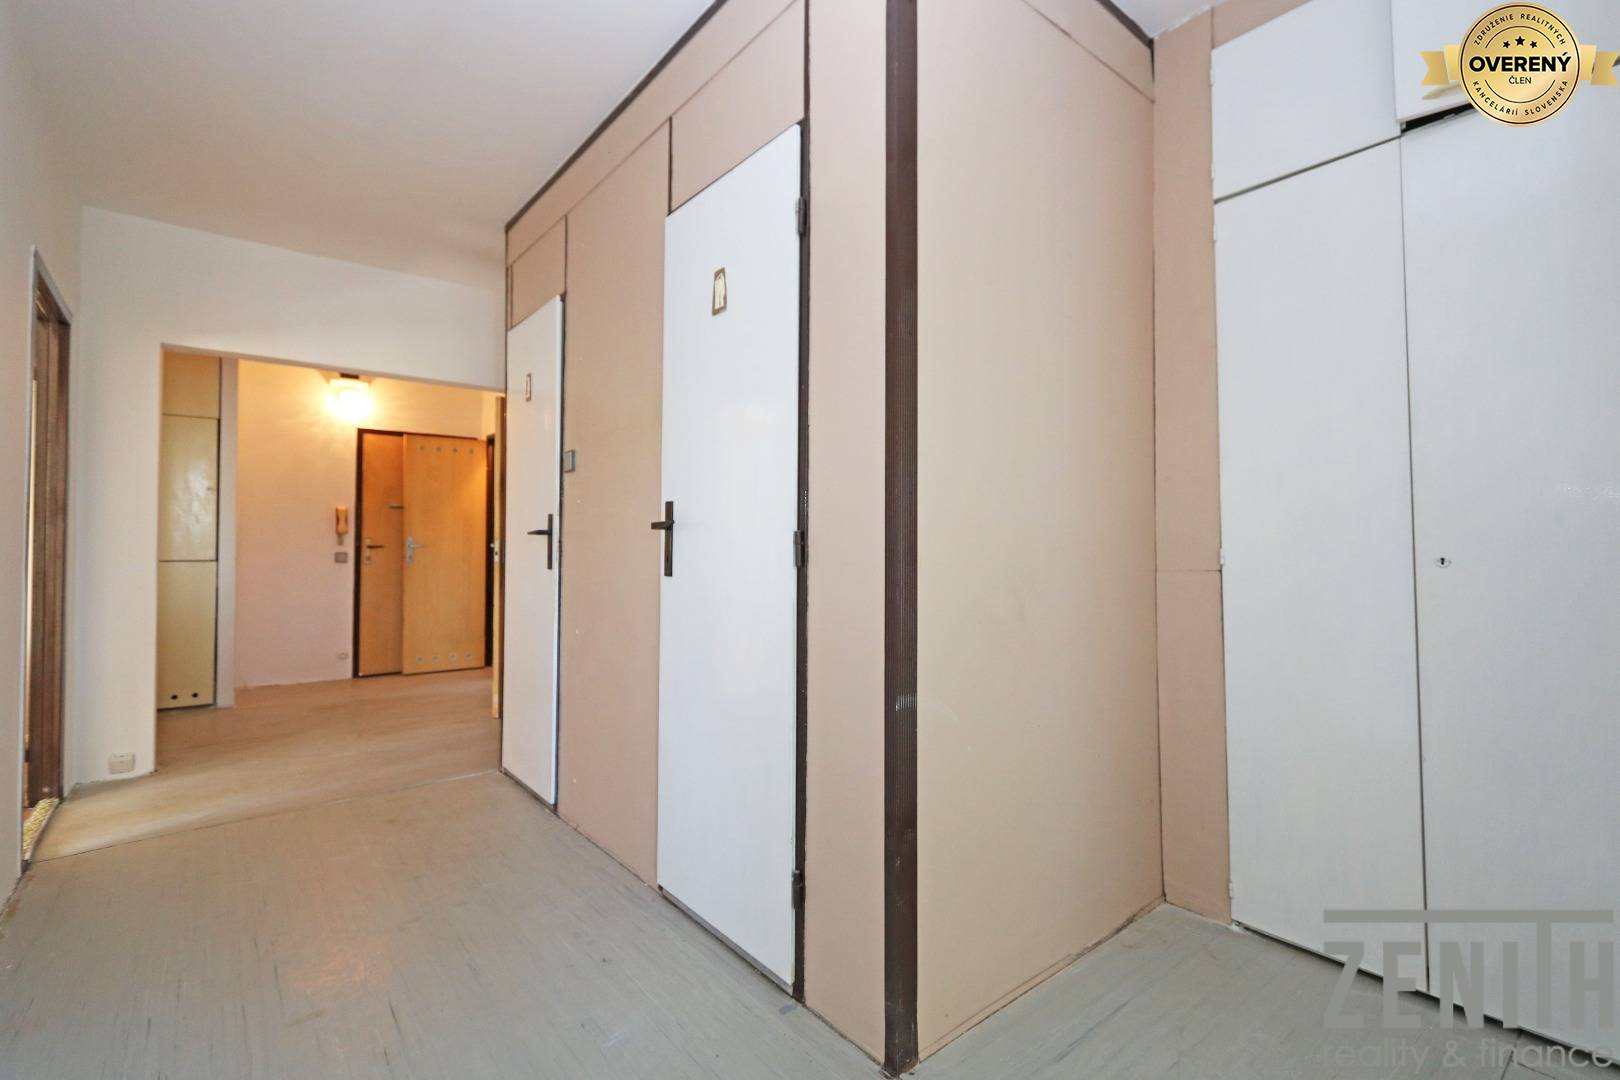 Three bedroom apartment, Viestova, Sale, Myjava, Slovakia